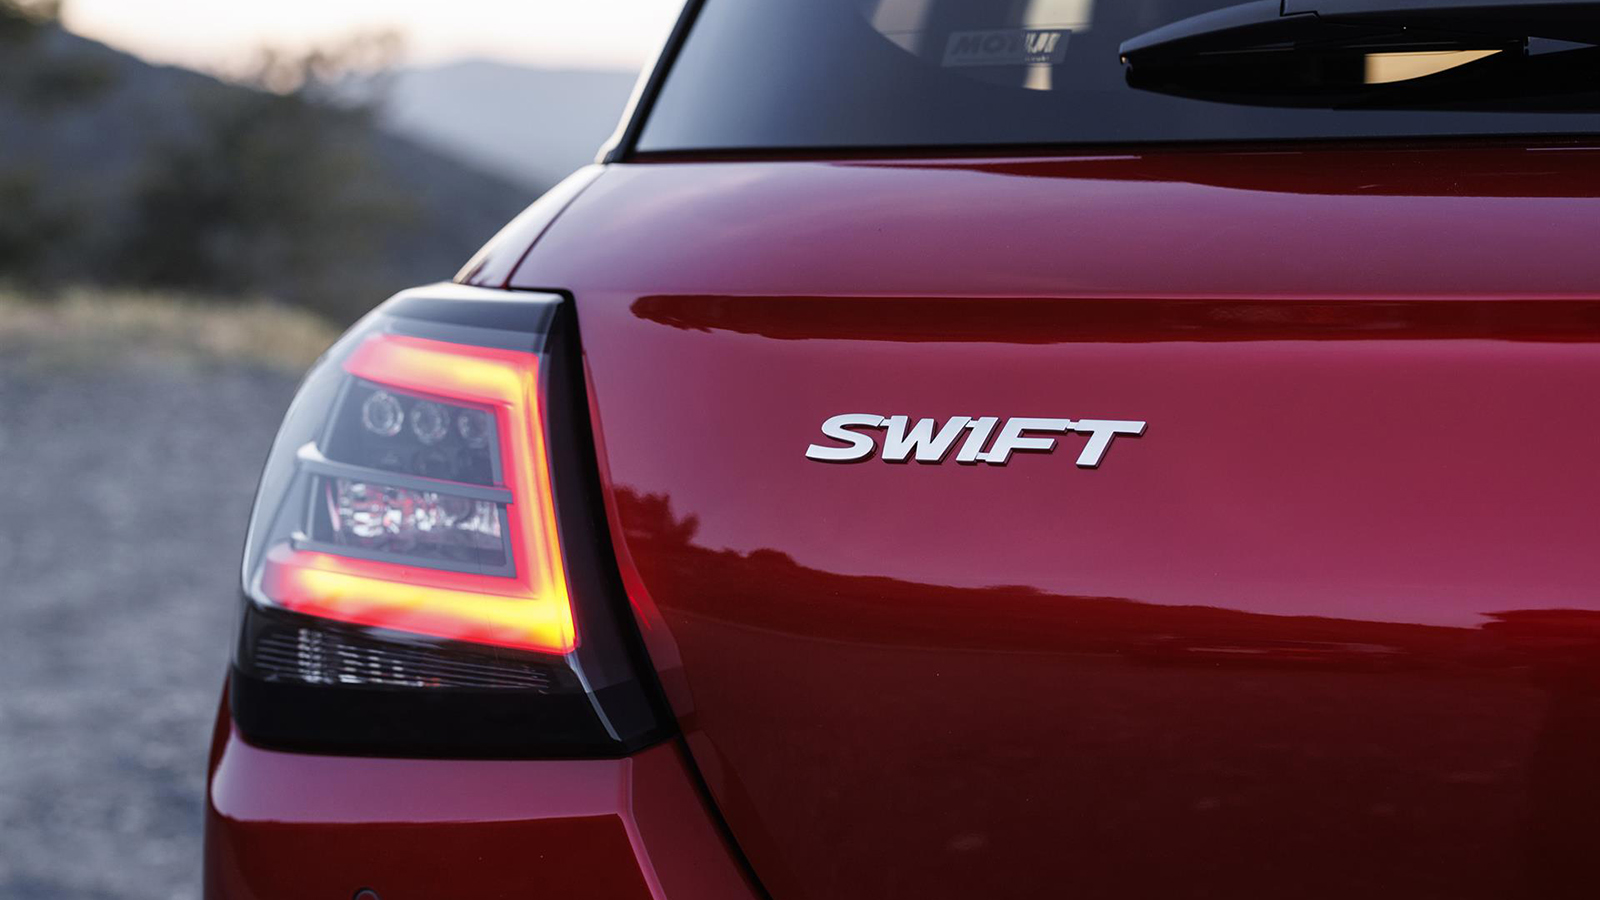 Cuarta generación del modelo Suzuki Swift. FOTO: Suzuki